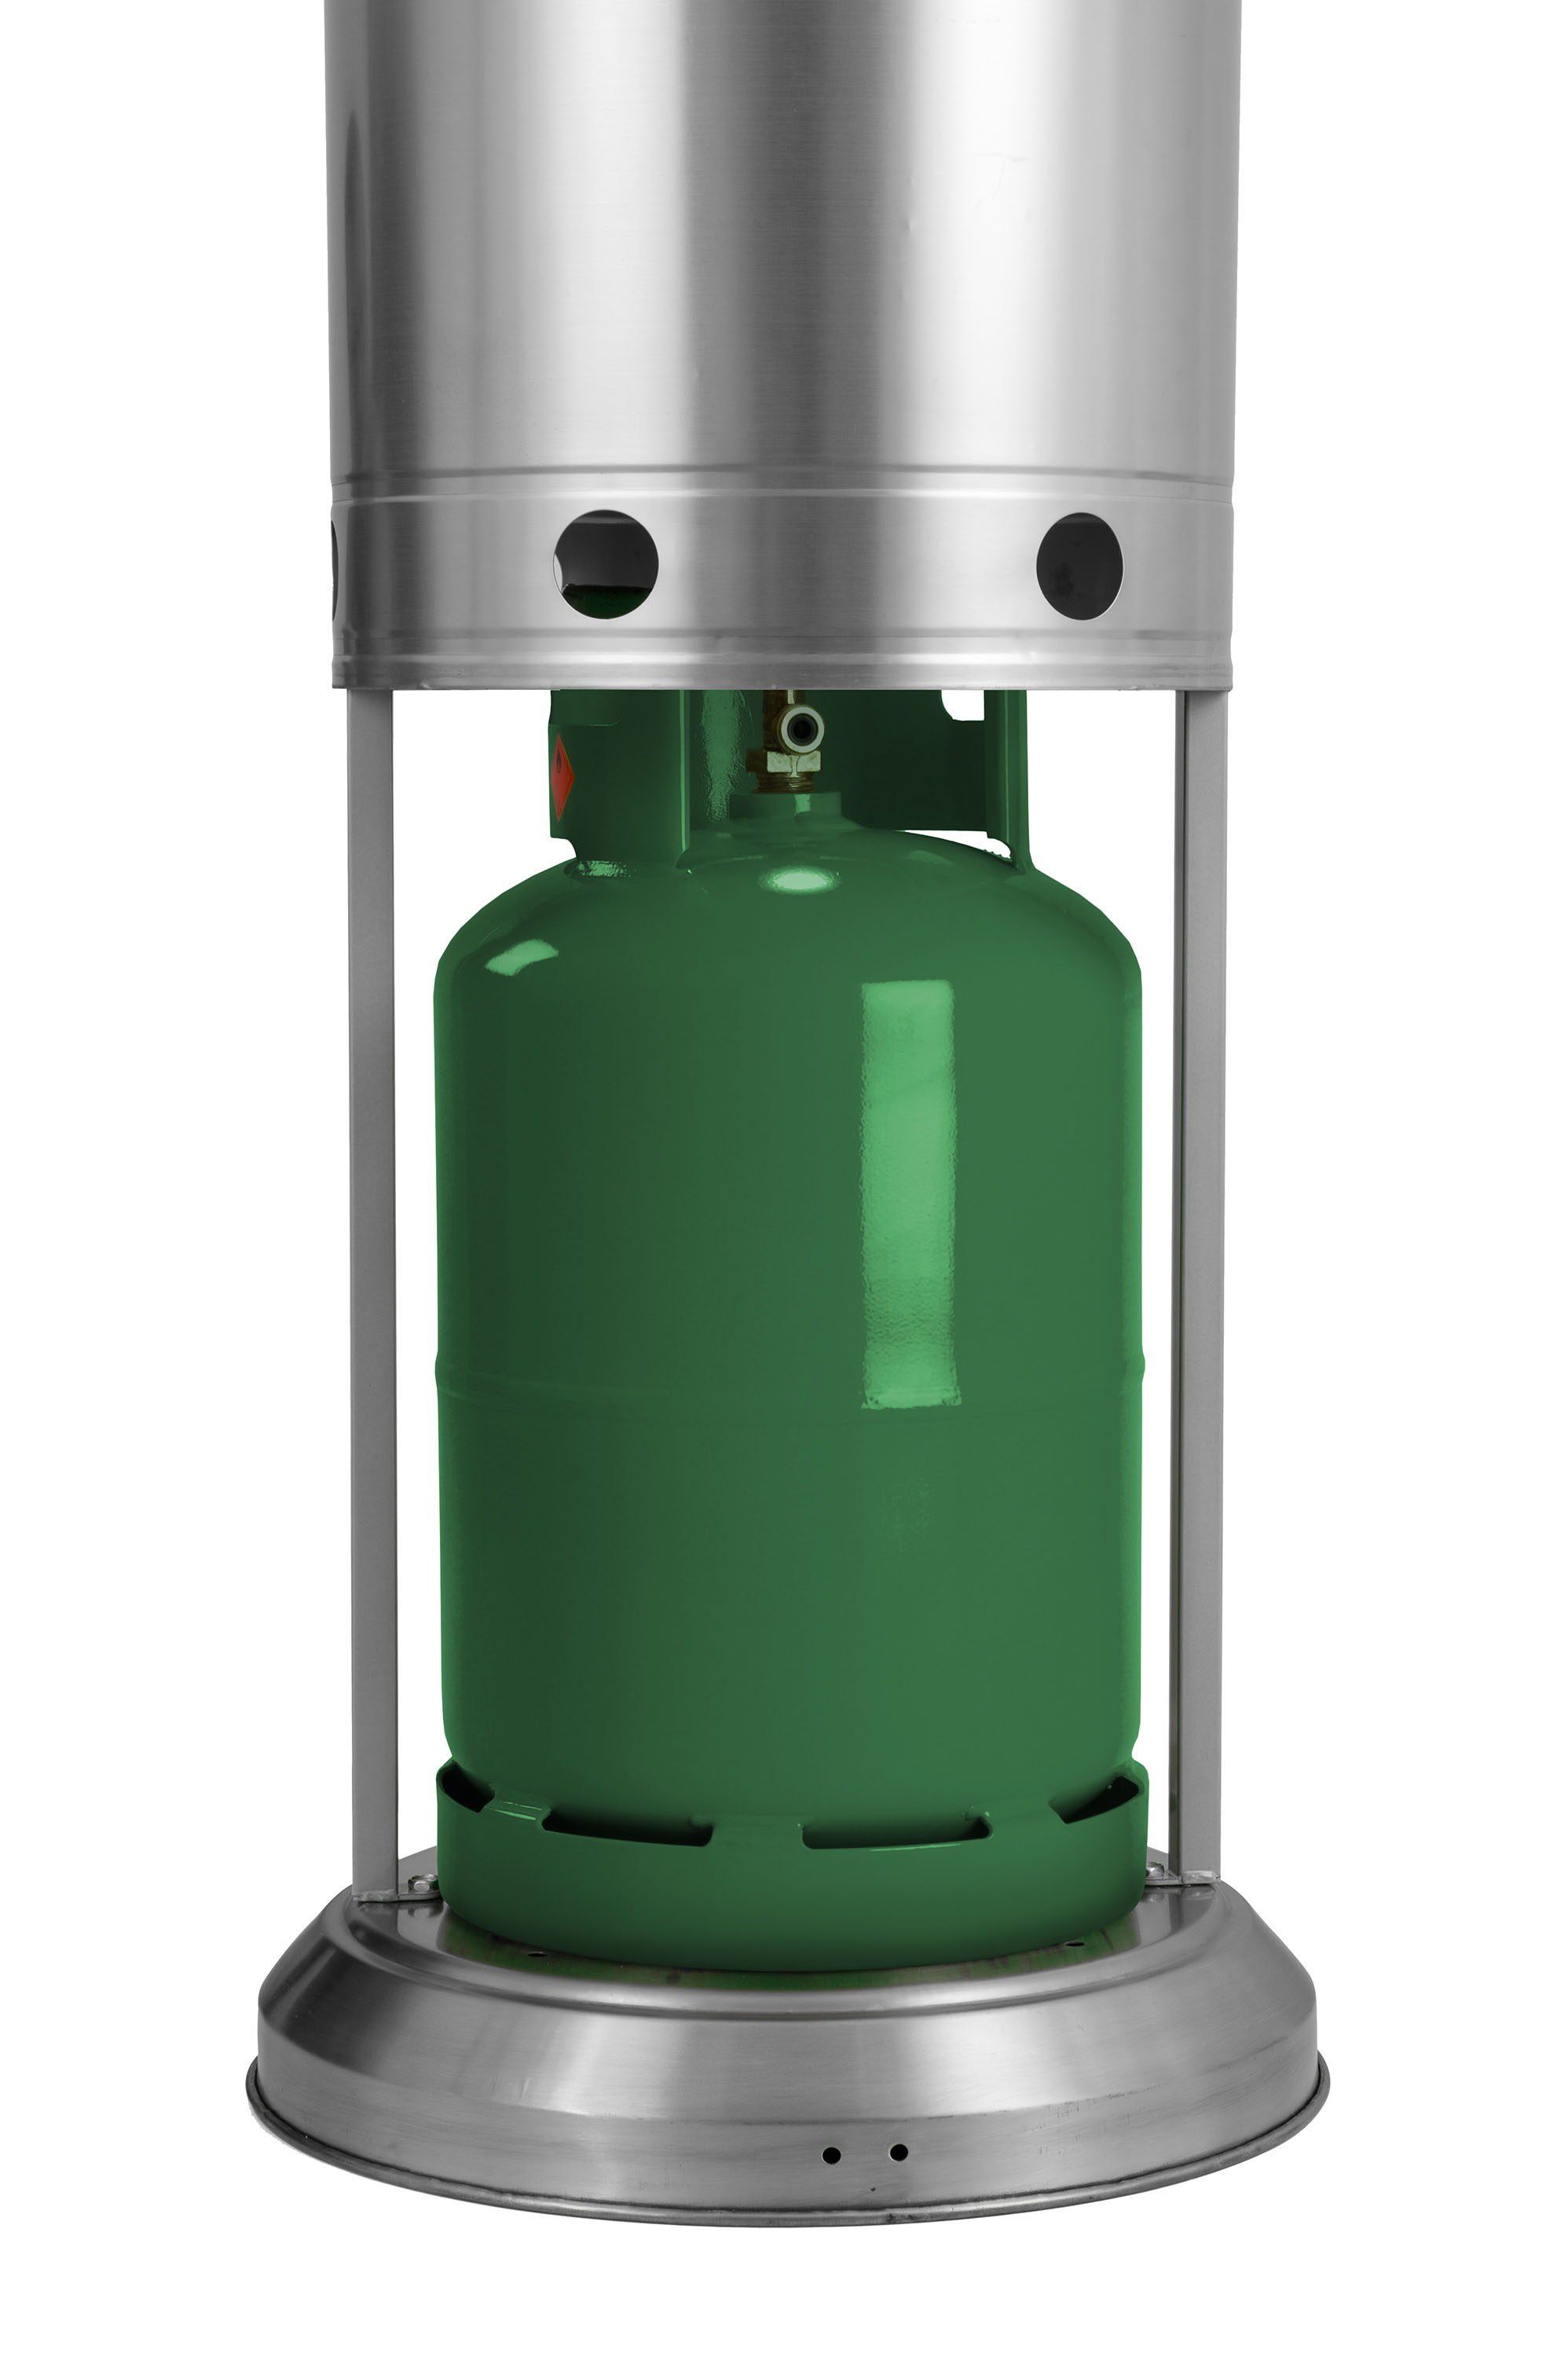 Obrázek galerie pro produkt G21 Moon TPMN1 + AKCE, Venkovní tepelný zářič / zahradní topidlo plynové pro PB lahev